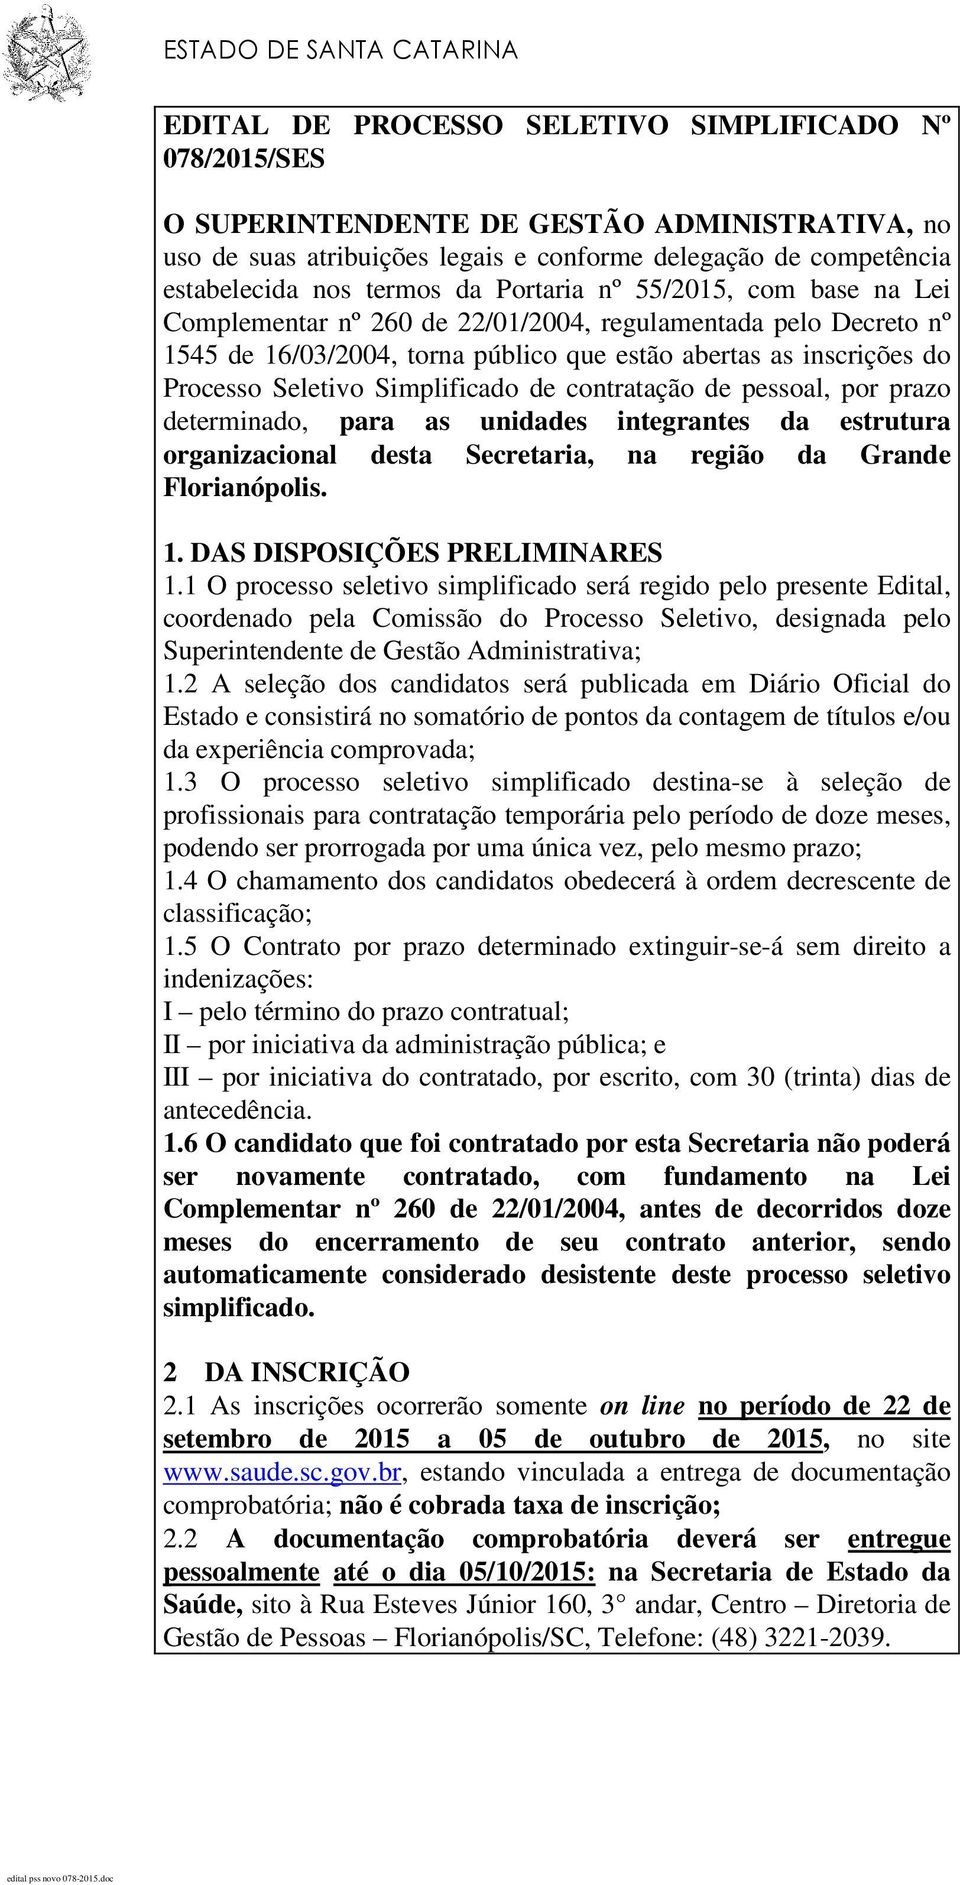 Processo Seletivo Simplificado de contratação de pessoal, por prazo determinado, para as unidades integrantes da estrutura organizacional desta Secretaria, na região da Grande Florianópolis. 1.